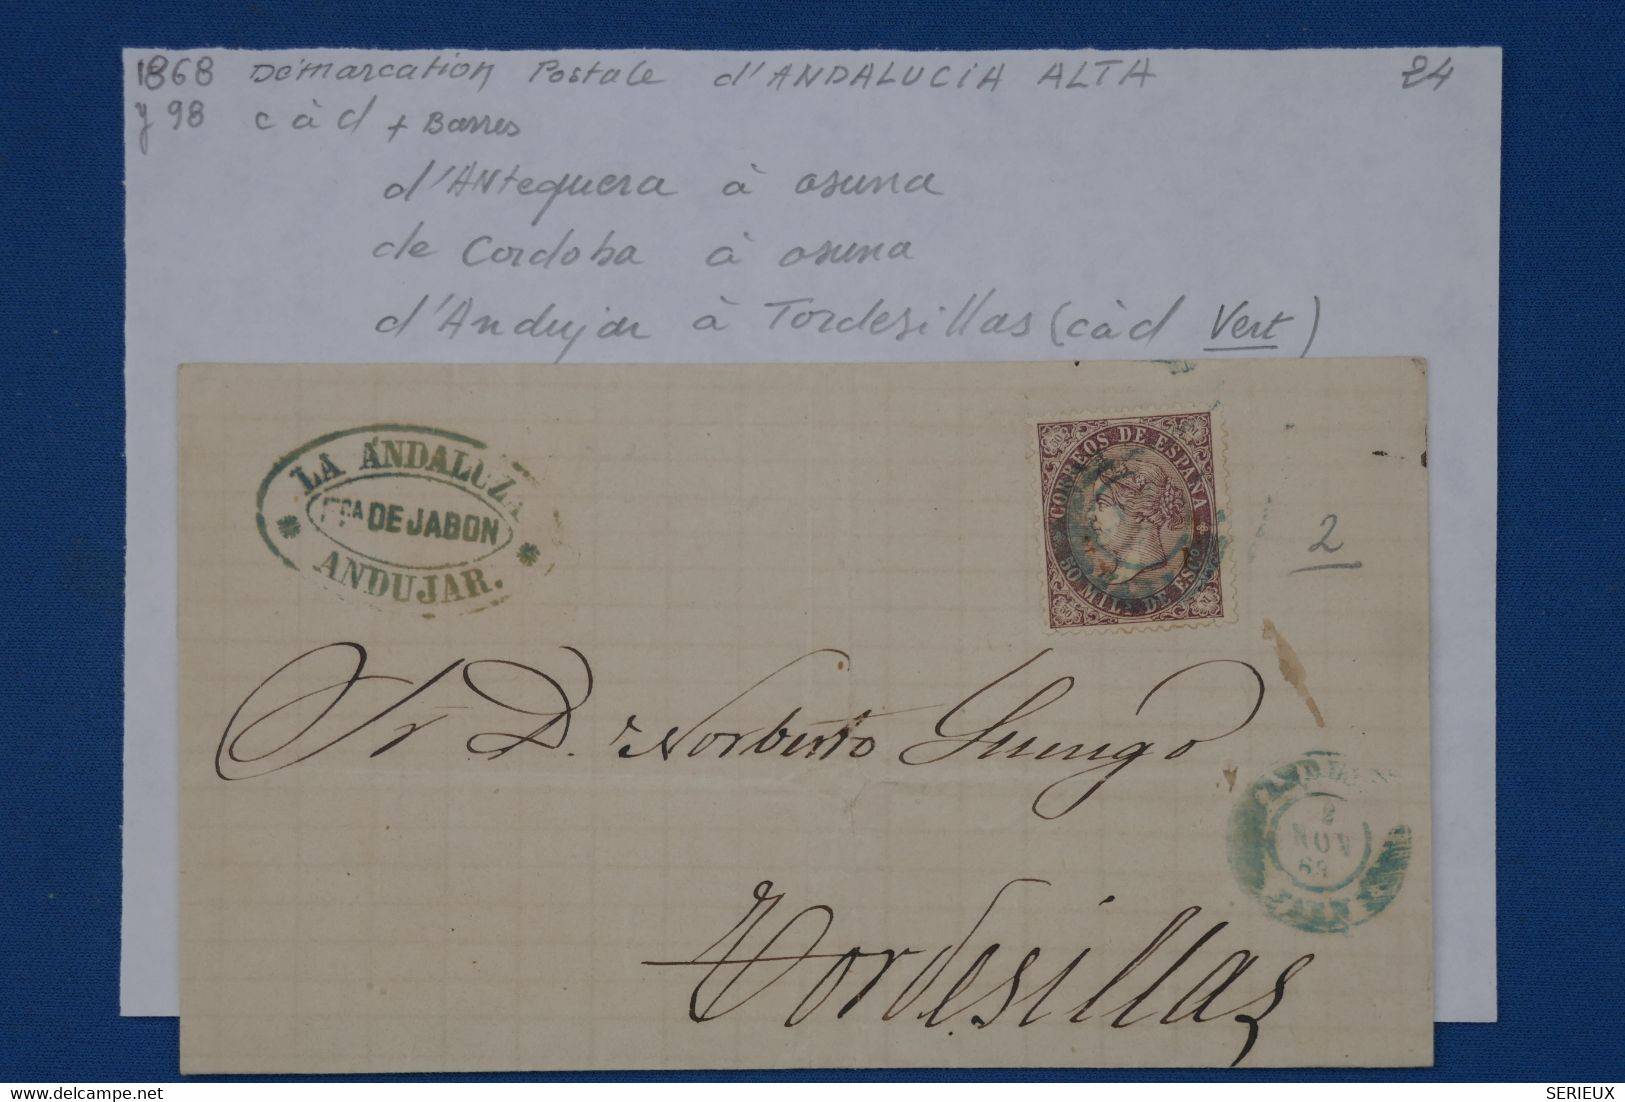 650 ESPANA  BELLE LETTRE 1868  ANDUJAR  POUR TORSEDILLAS  +CACHET VERT RARE ++AFFRANCH. INTERESSANT - Cartas & Documentos